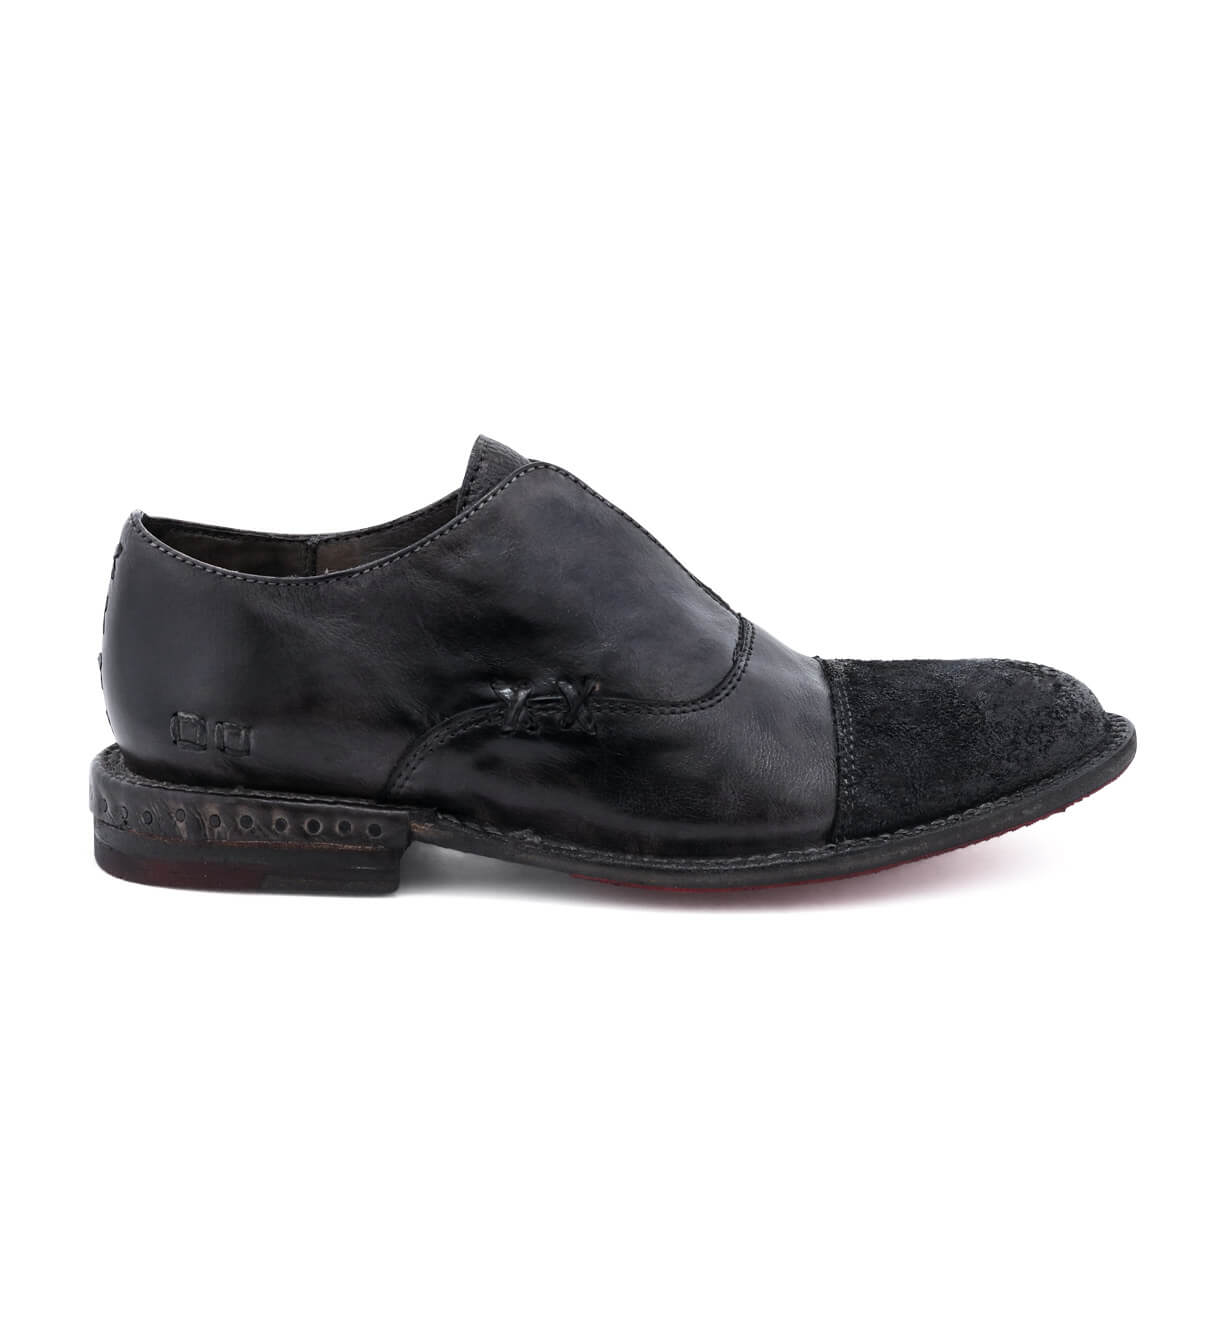 Bed Stu Rose men's black leather slip on shoes.